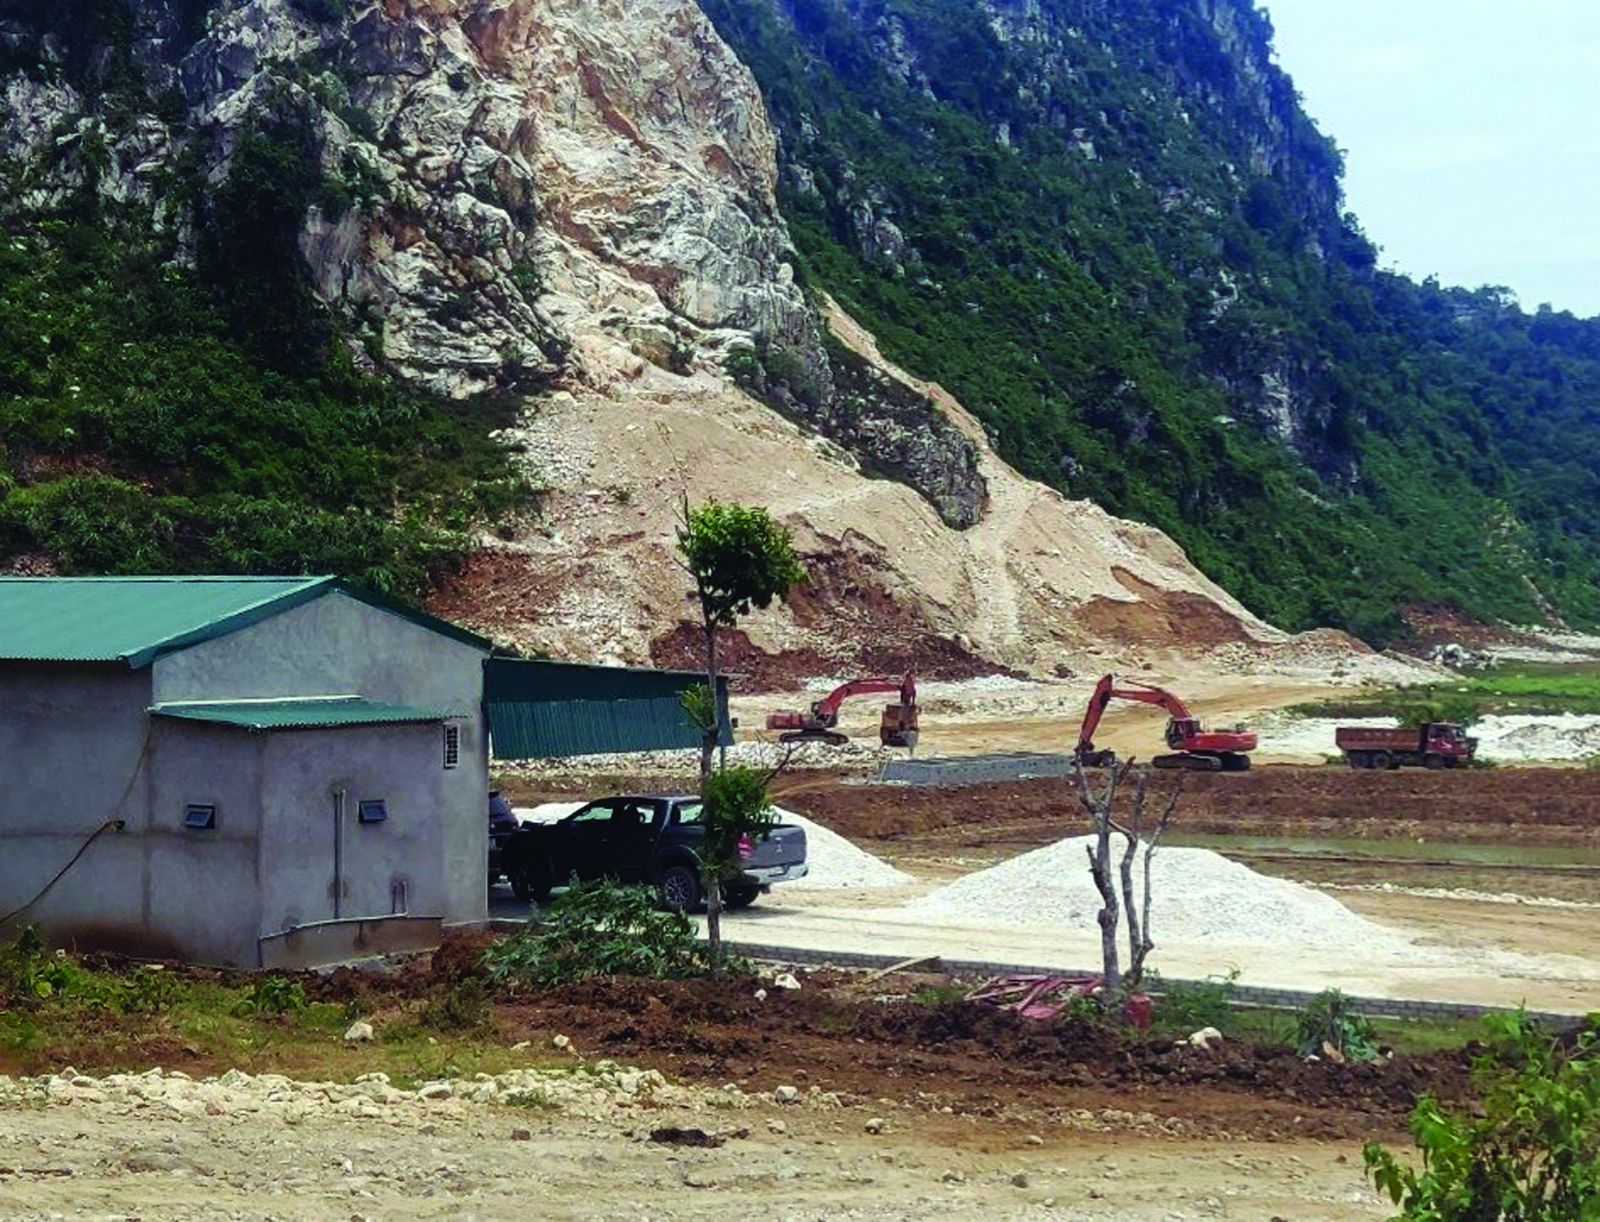  Mỏ đá tại Thung Vượt, Nghệ An được cấp phép cho Công ty CP Sơn Nam khai thác từ năm 2016 nhưng đến nay chưa hoàn thiện thủ tục thuê đất theo quy định